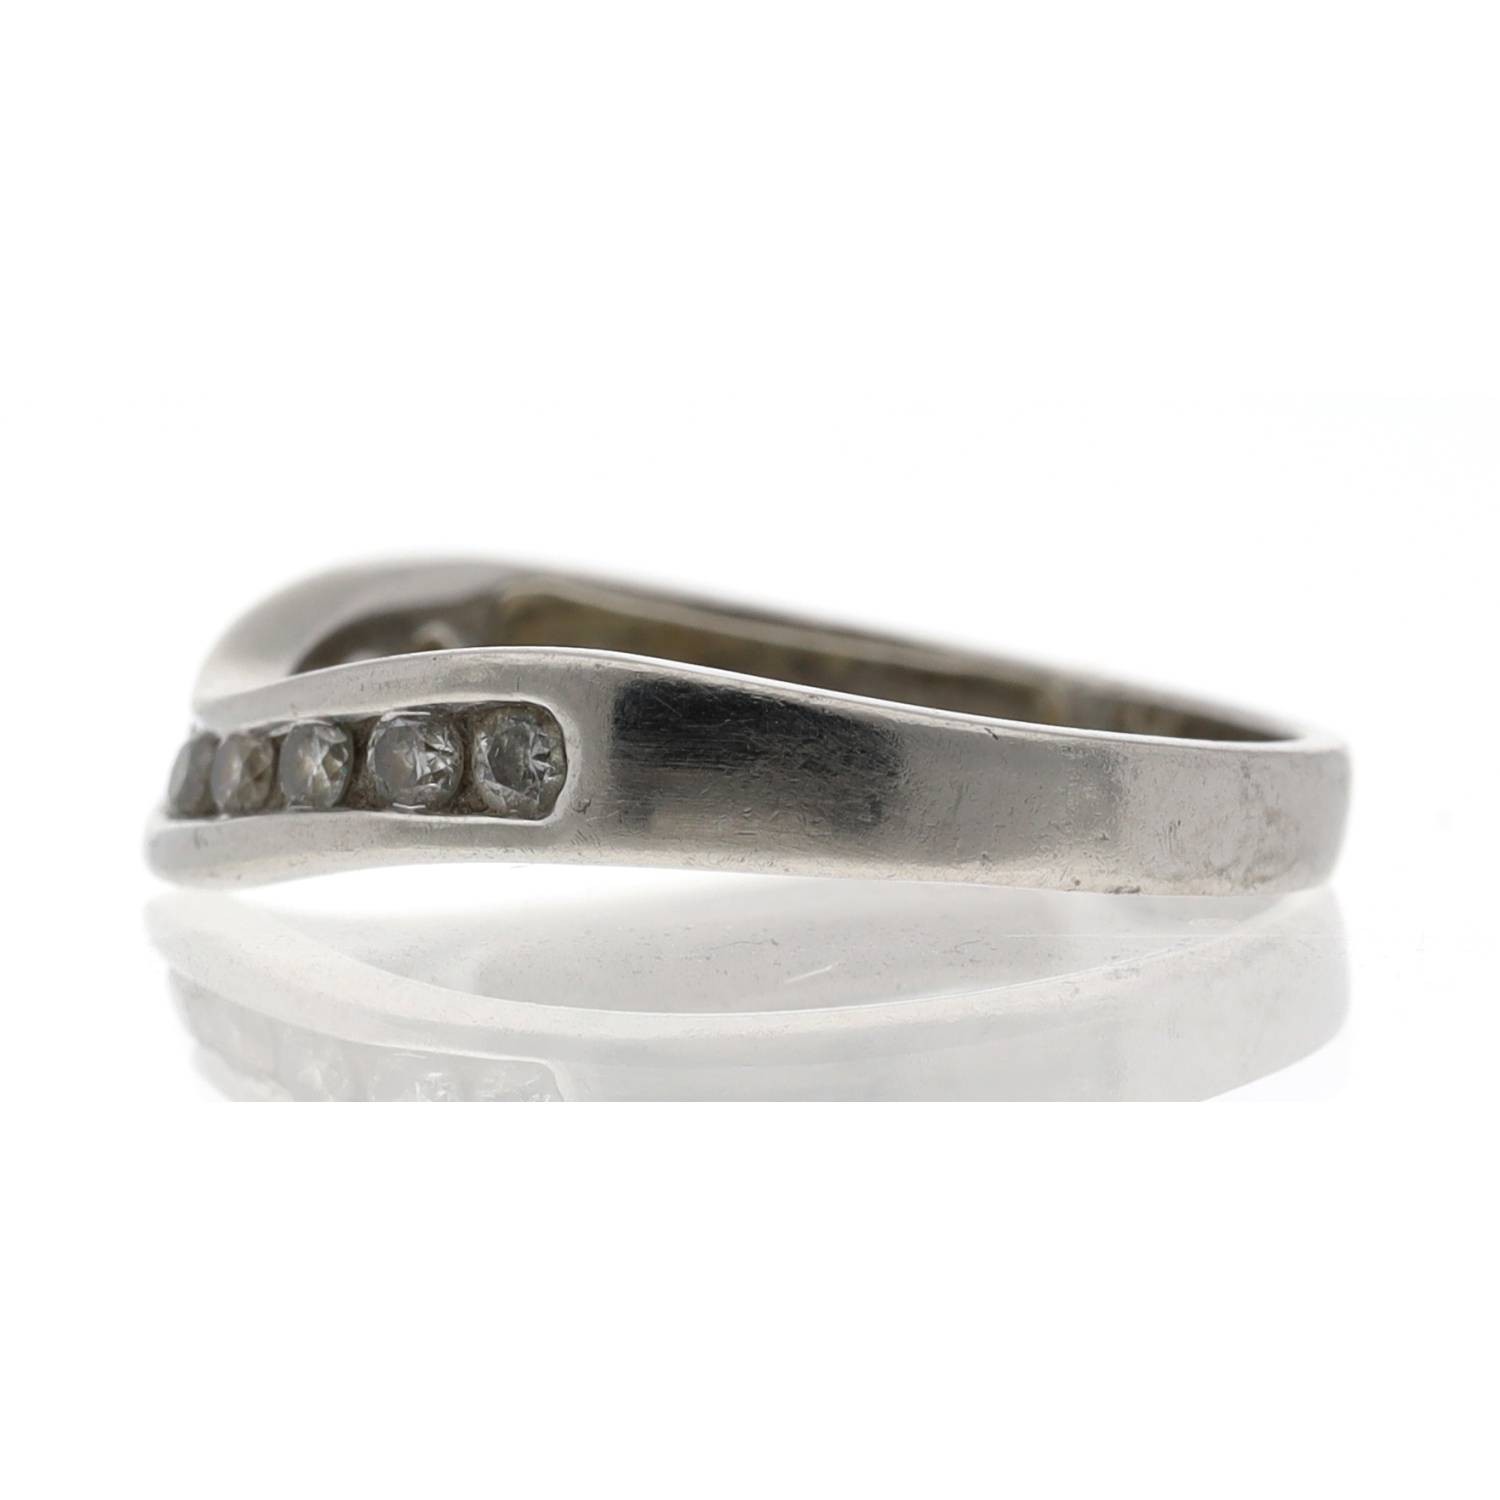 White metal diamond set half eternity ring, 2.7gm, ring size J/K (516) - Image 2 of 2